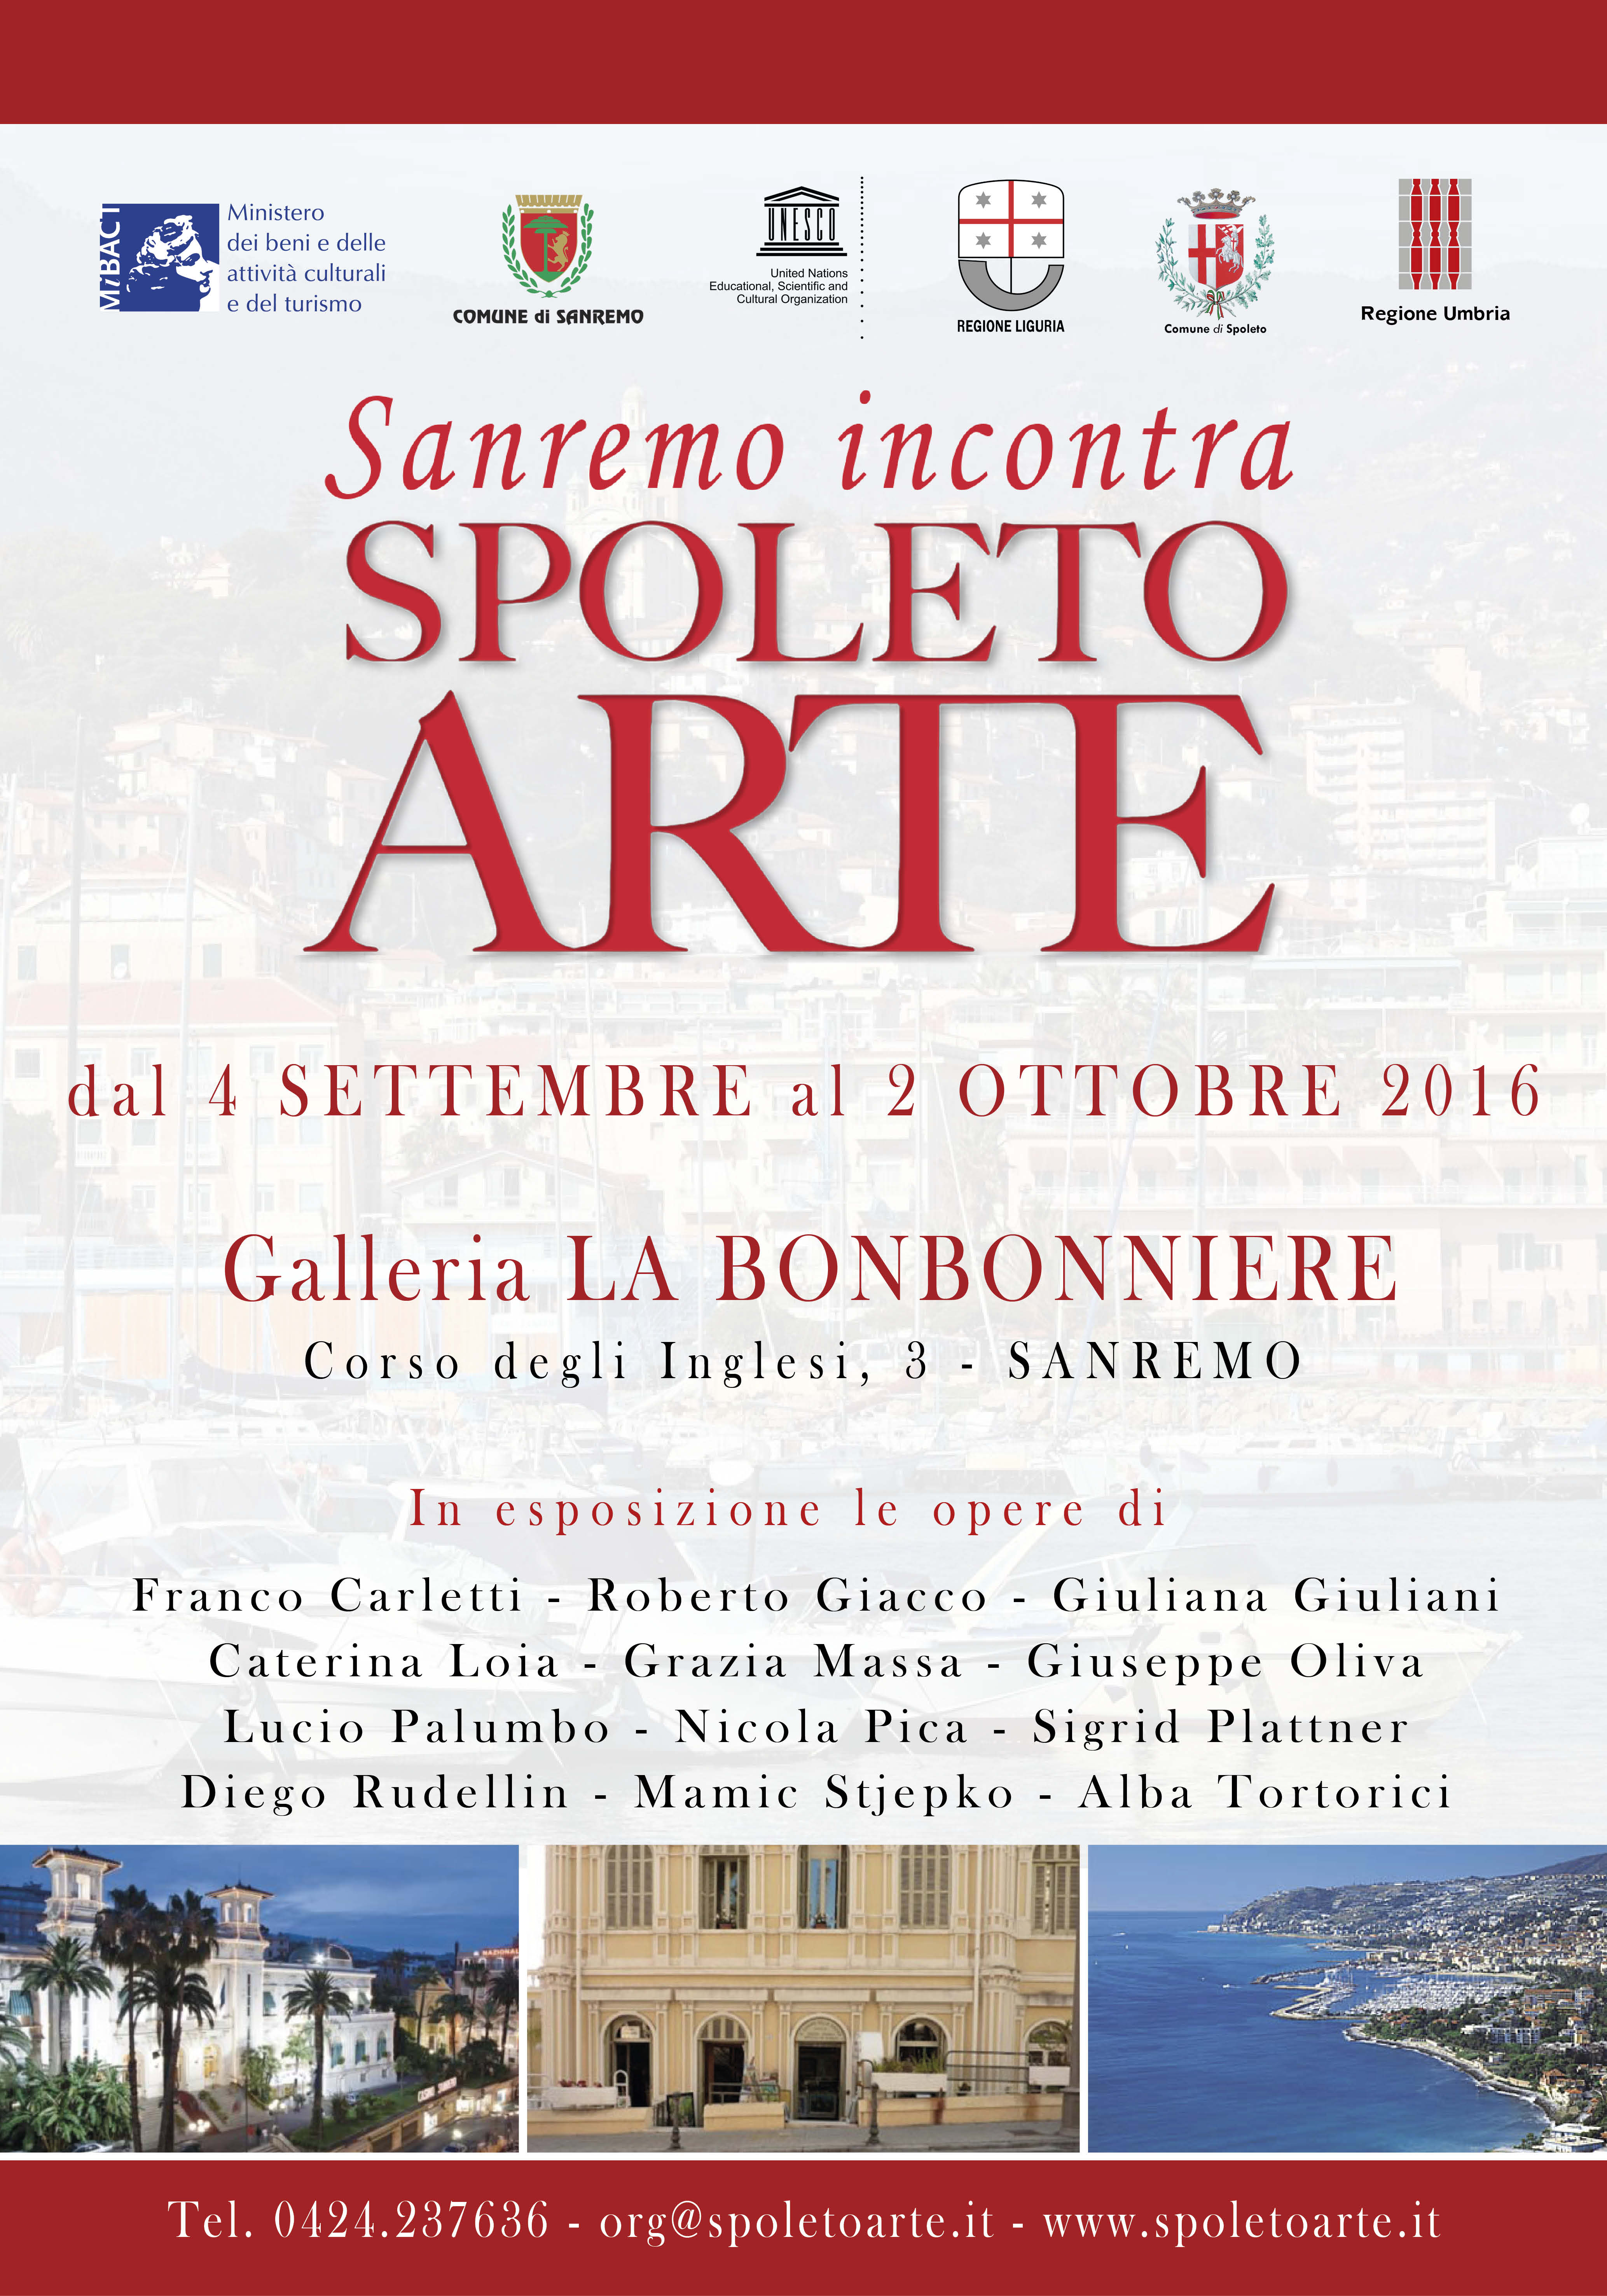 Milano Art Gallery: a Sanremo con una mostra targata Spoleto Arte